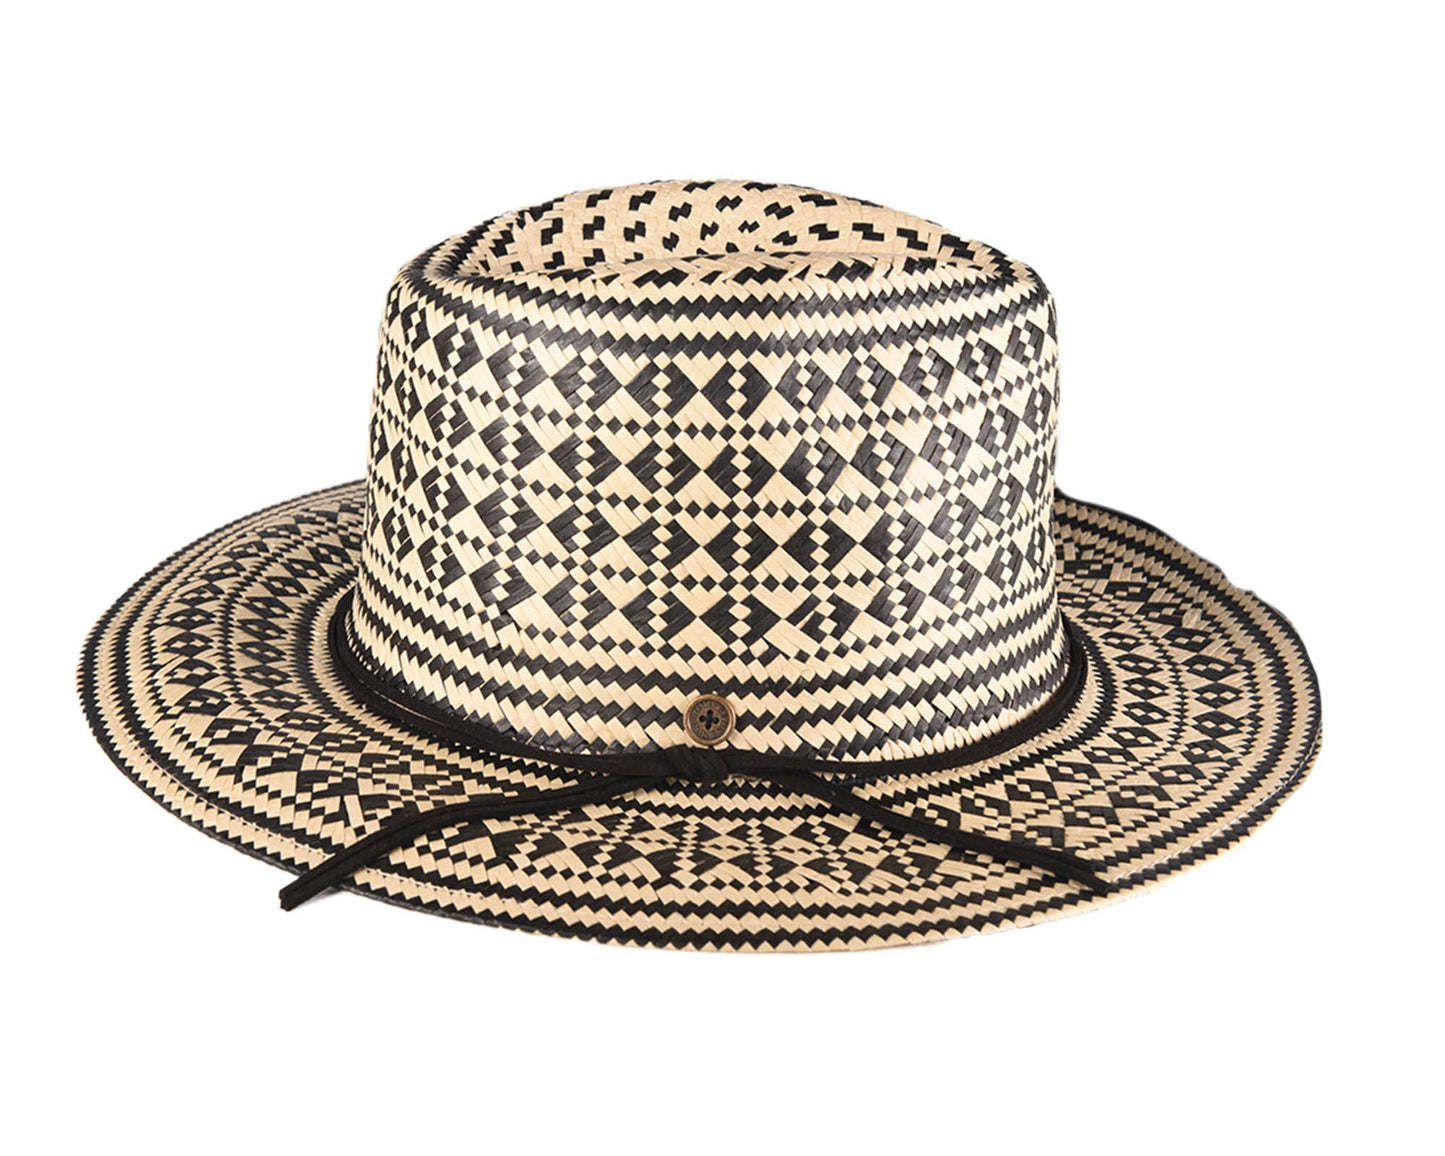 The Komorebi Series 2. Ni Straw Hat